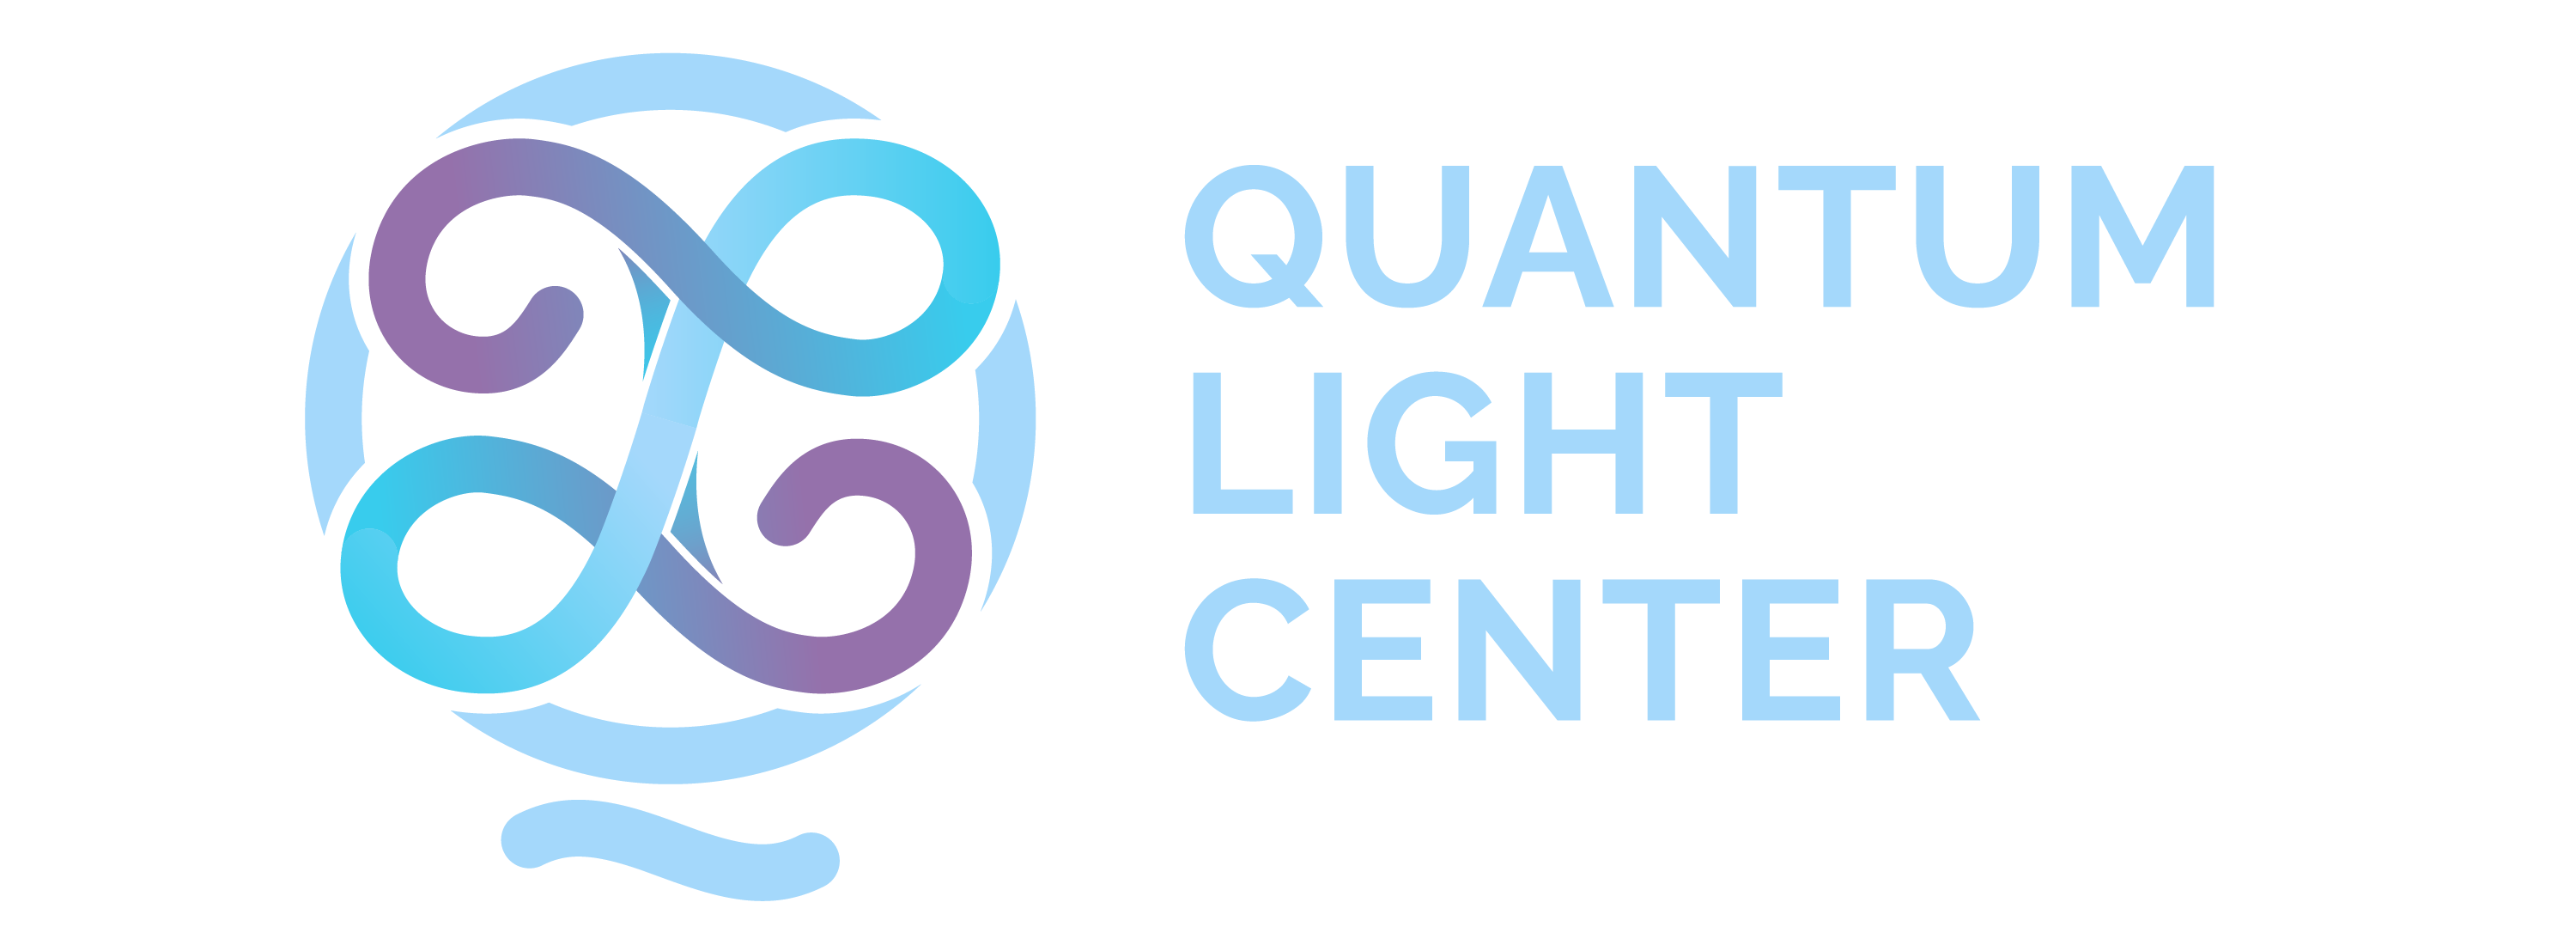 Quantum Light Center